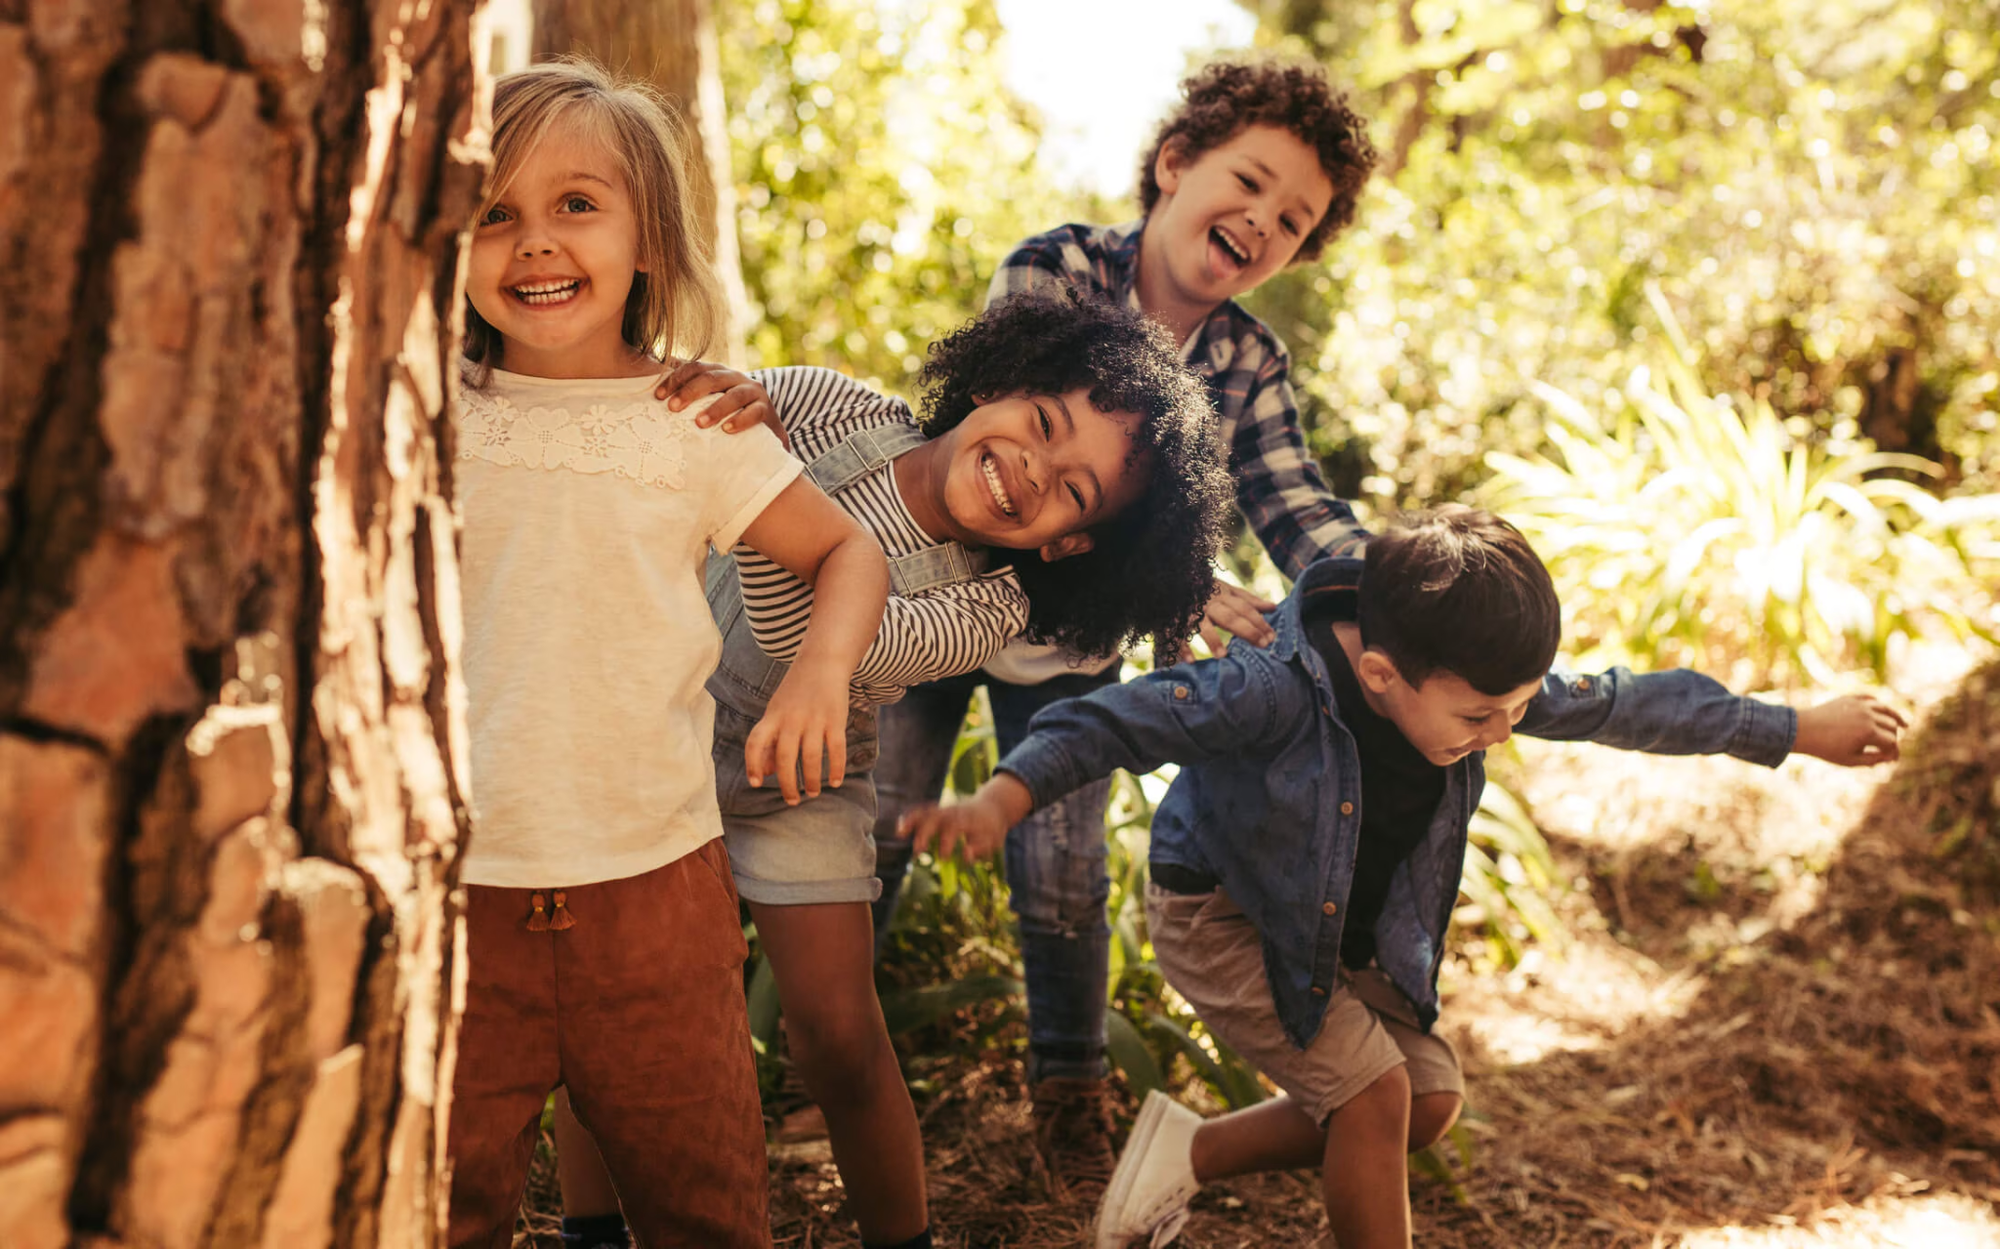 Phỏng vấn 720 người phát hiện ra: Những đứa trẻ lớn lên hạnh phúc thường có 3 đặc điểm, không liên quan gì đến sự giàu có- Ảnh 2.